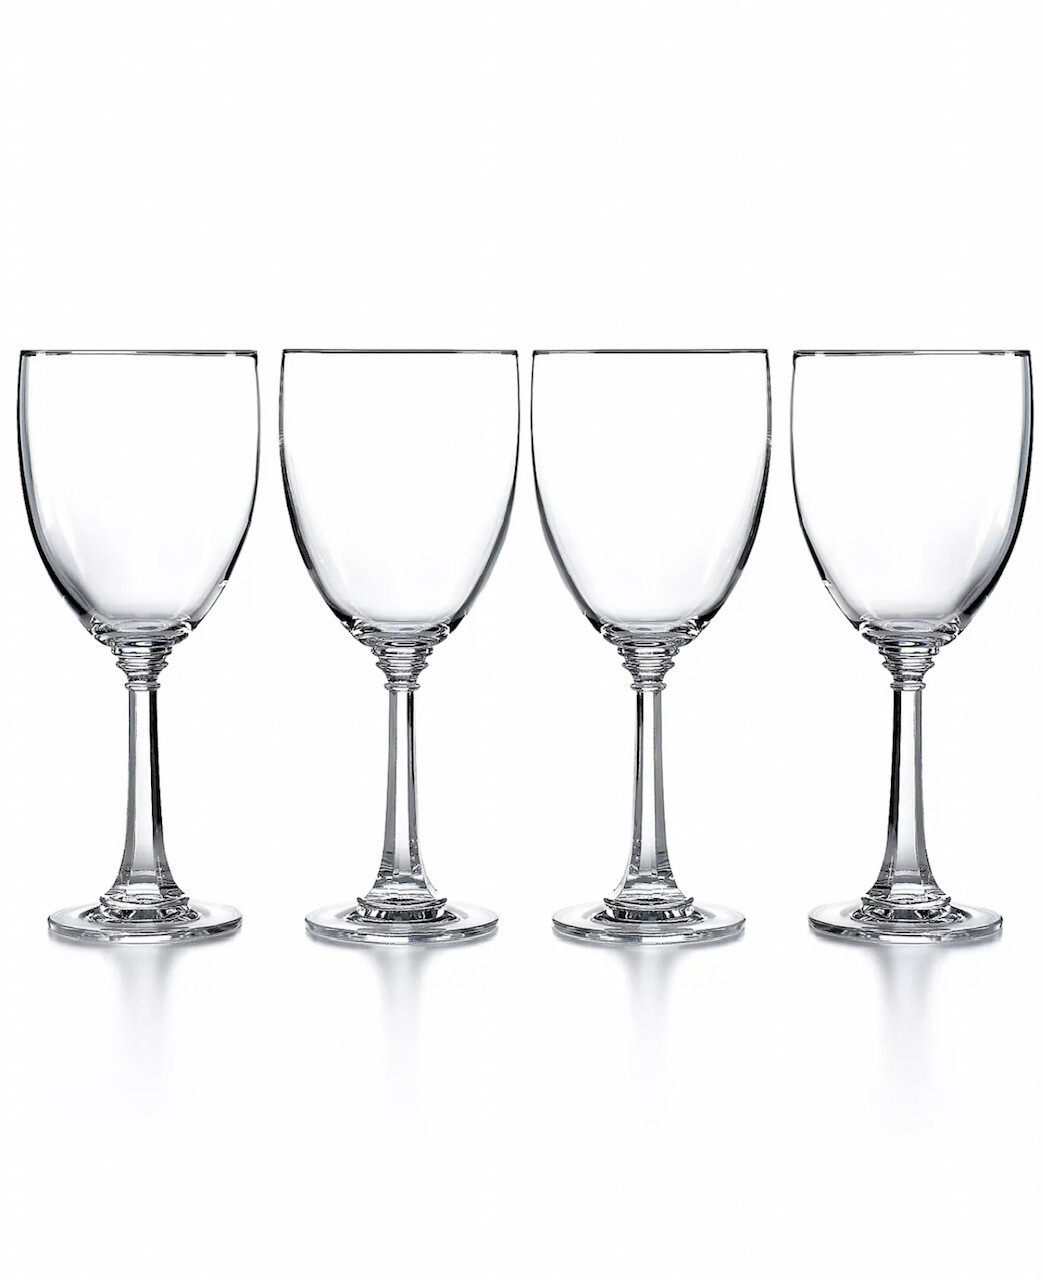 Martha Stewart Collection Glassware, Set of 4 Rhodes Goblets